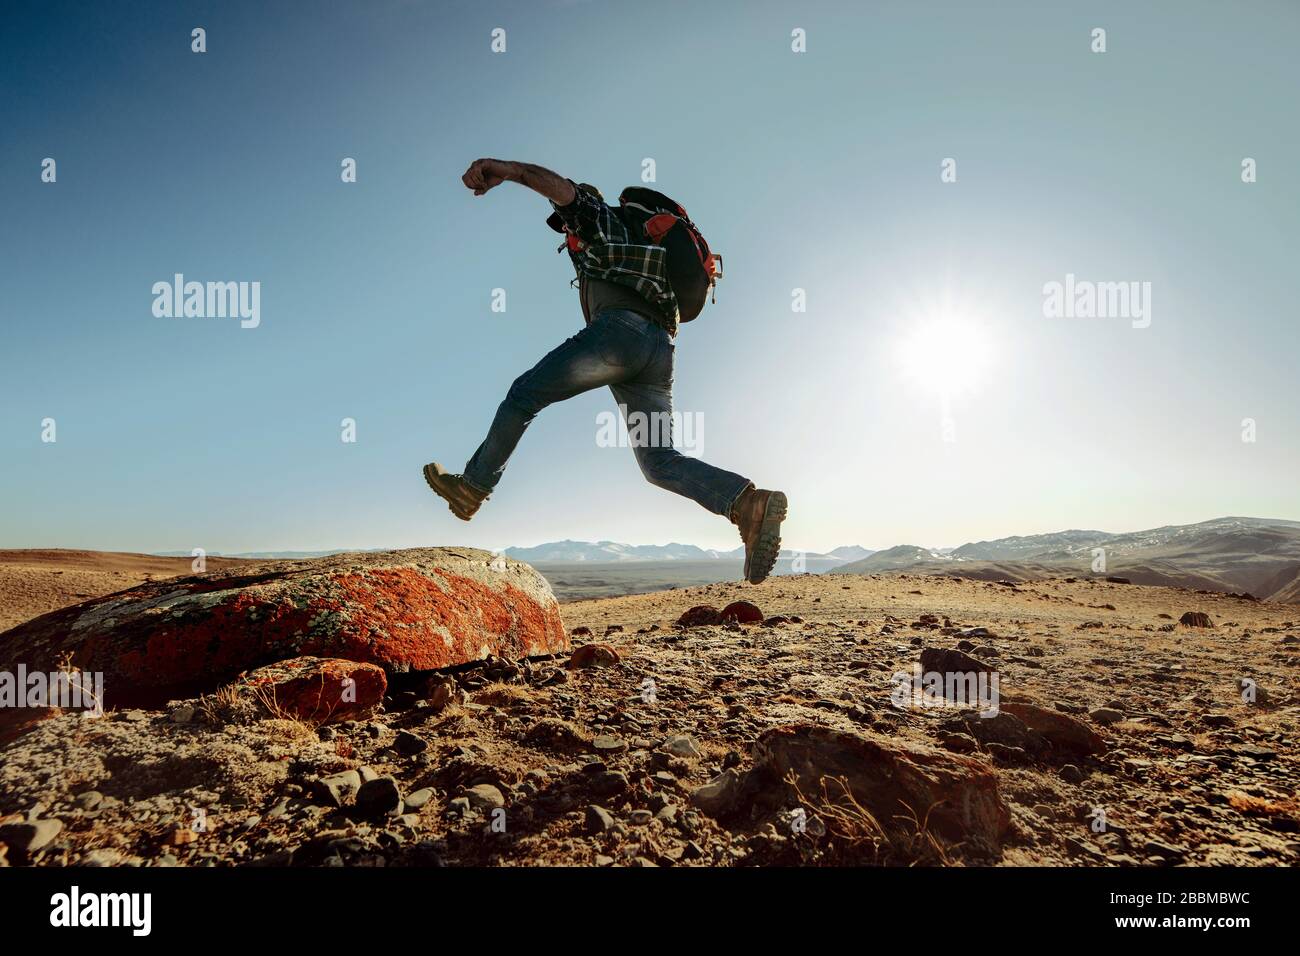 Wanderer oder Reisender mit Rucksack springt auf großen Felsen gegen blauen Himmel bei Sonnenuntergang Stockfoto